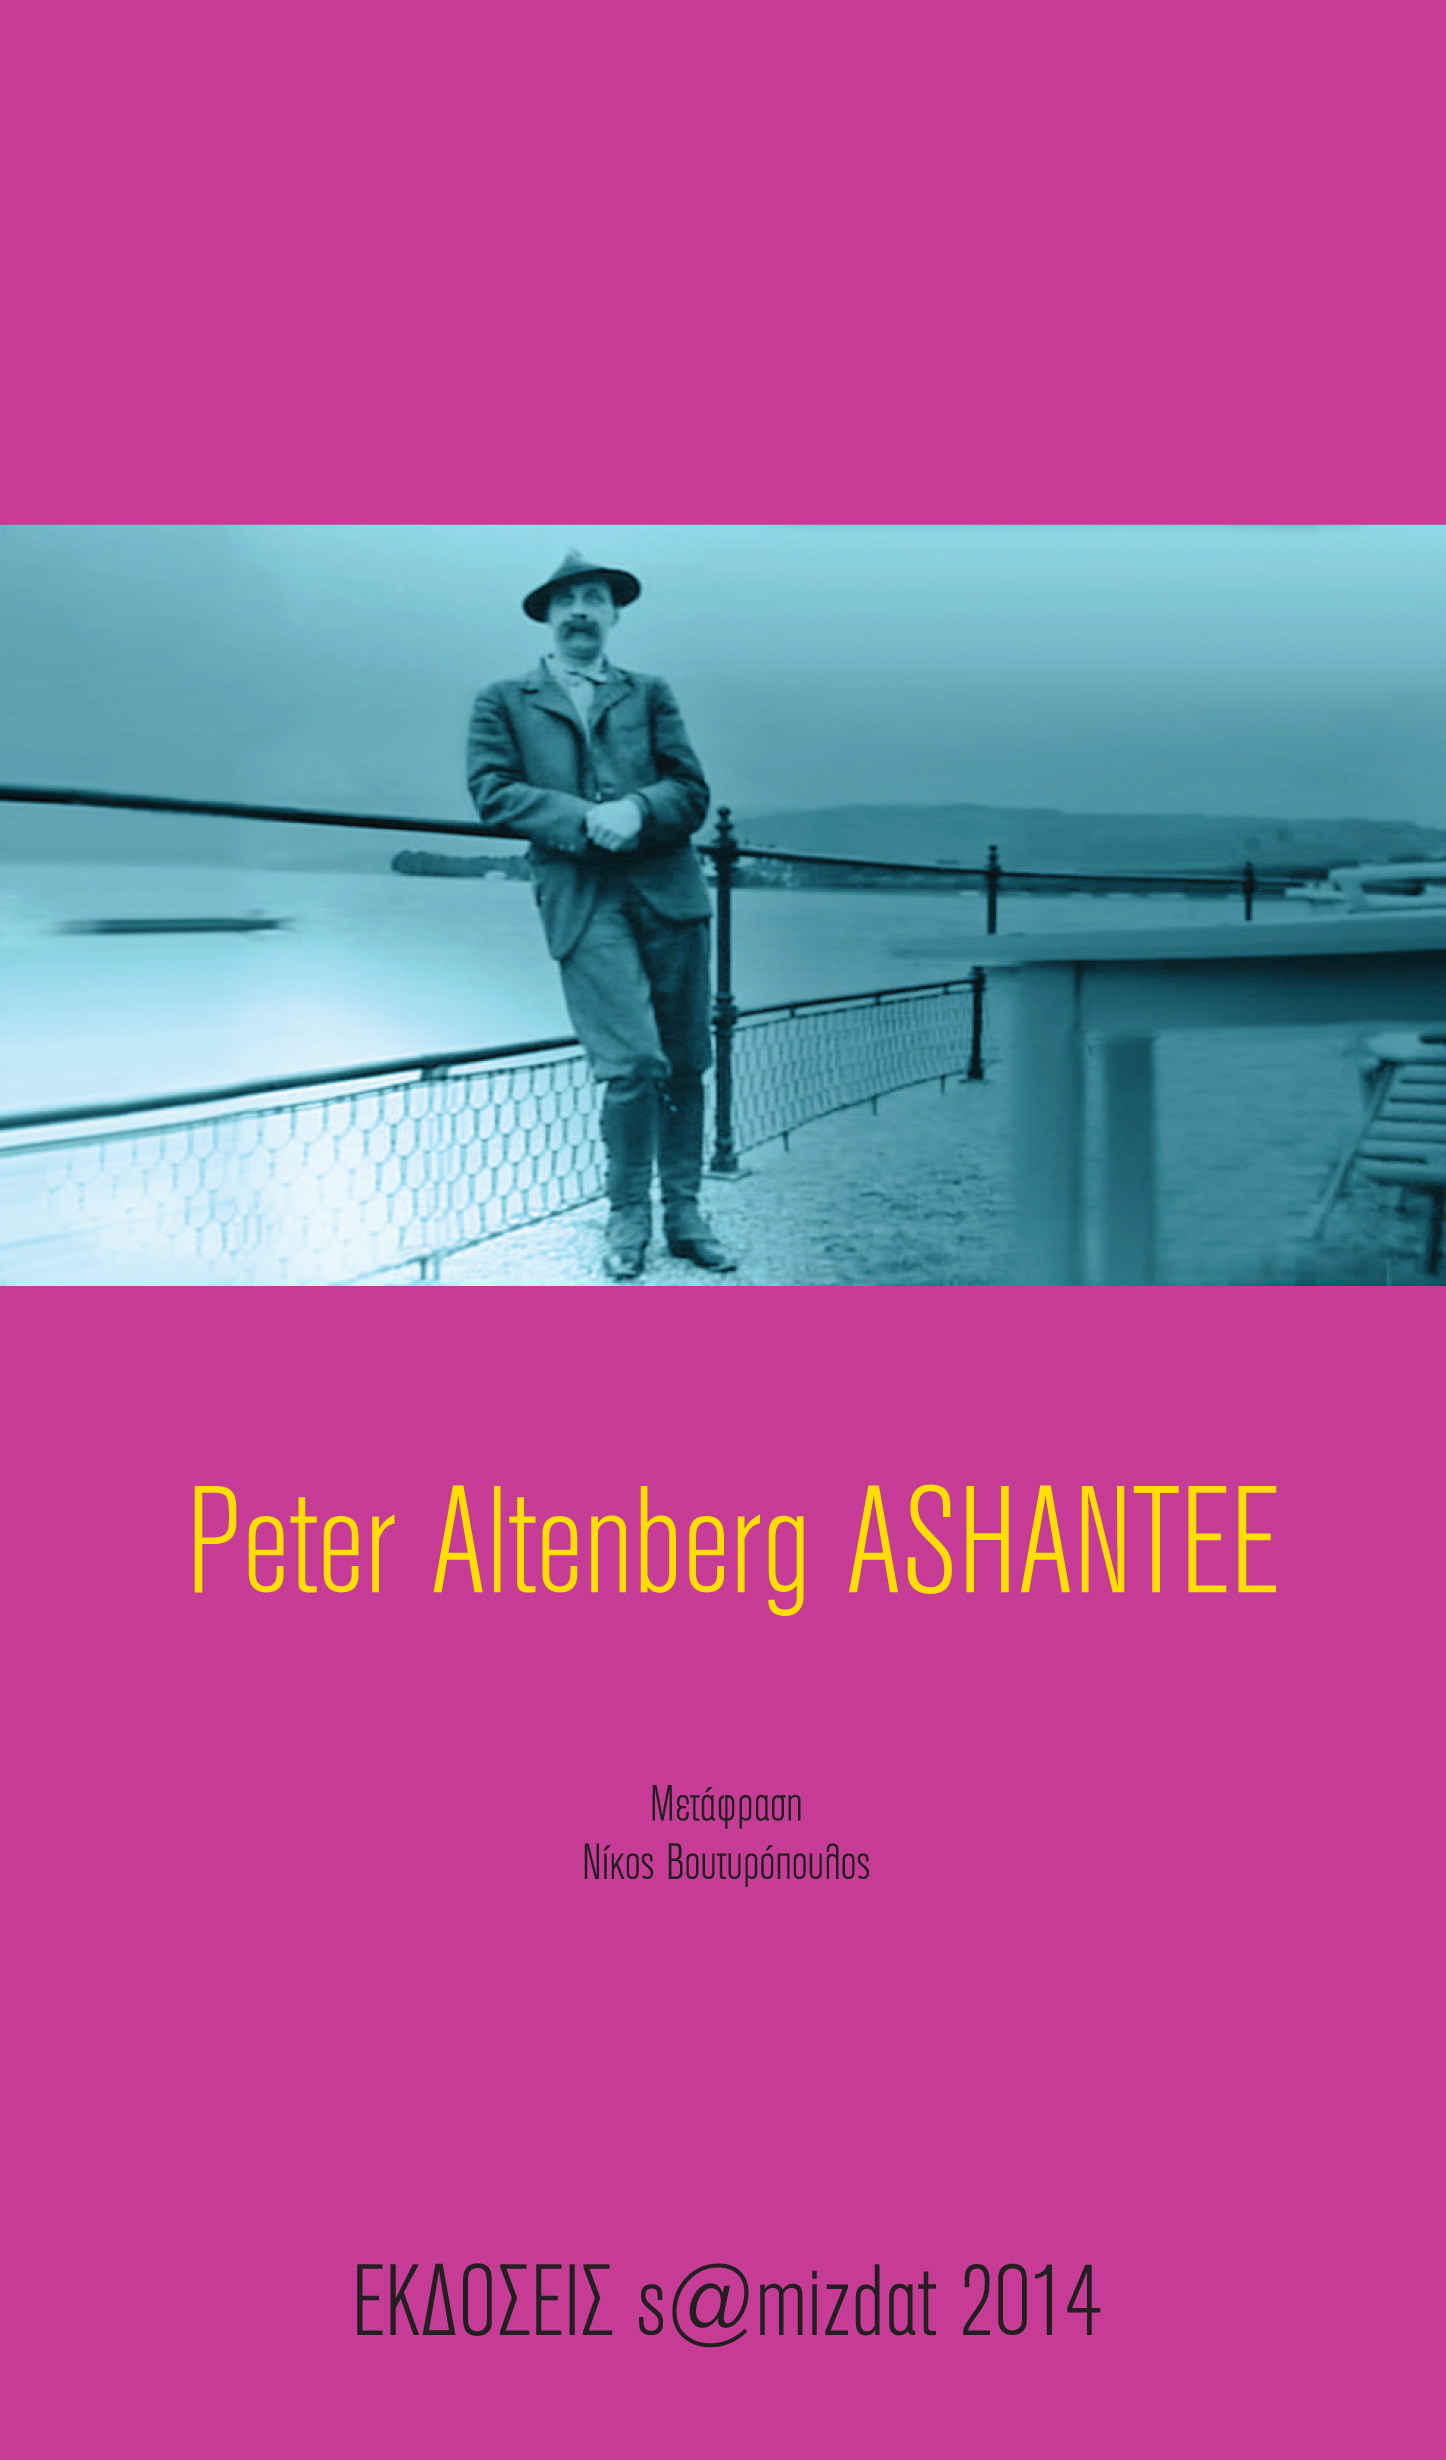 Peter Altenberg Ashantee